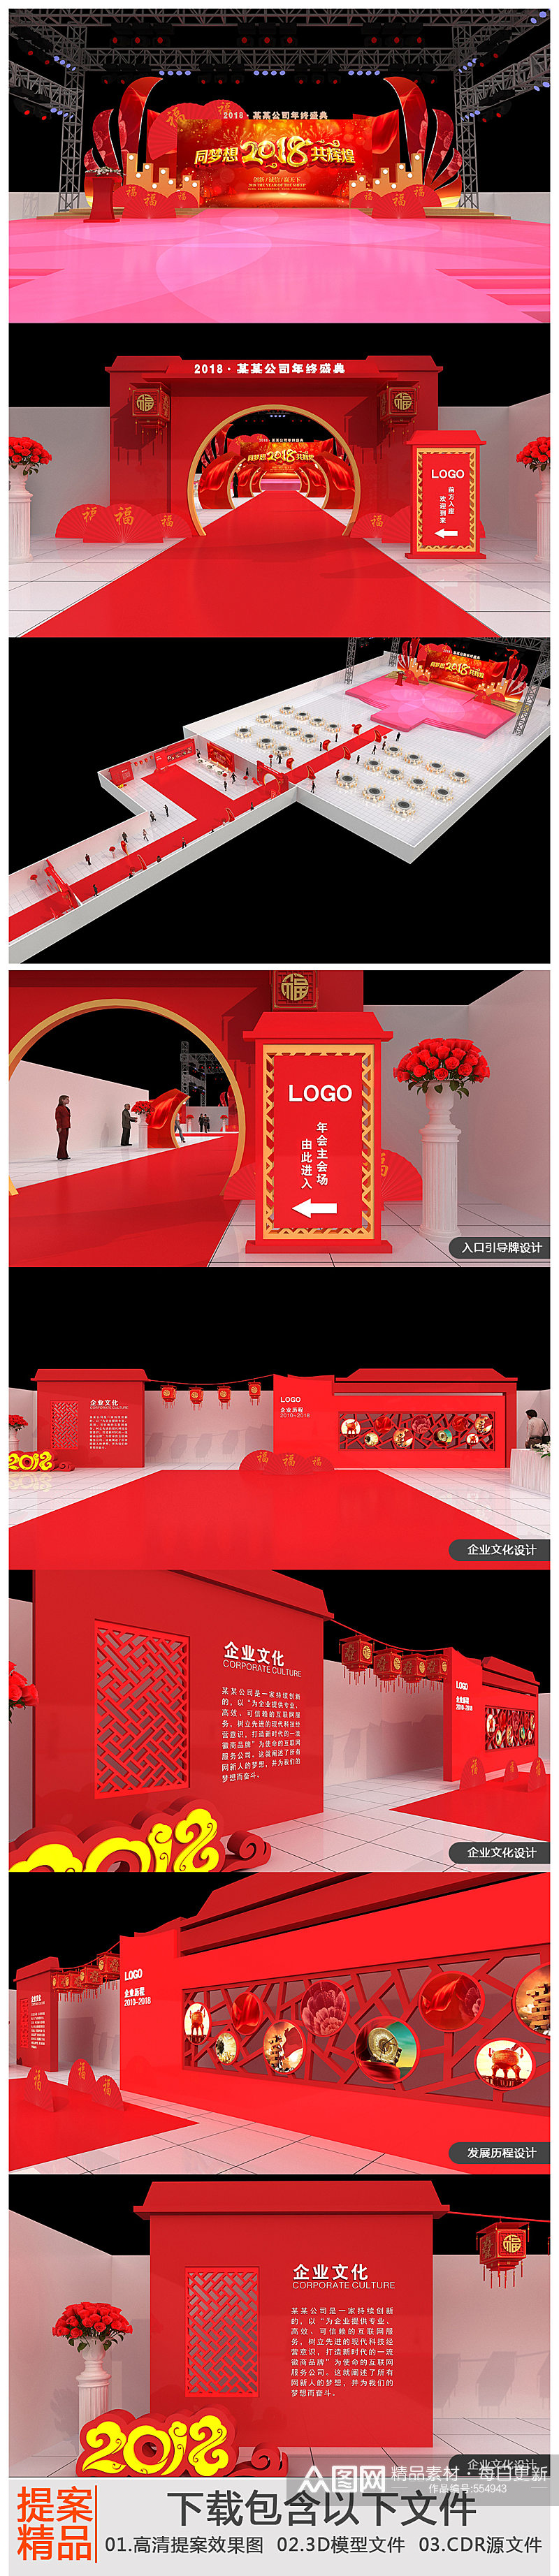 中国风红色大型企业年会布置舞布置美设计舞台设计素材